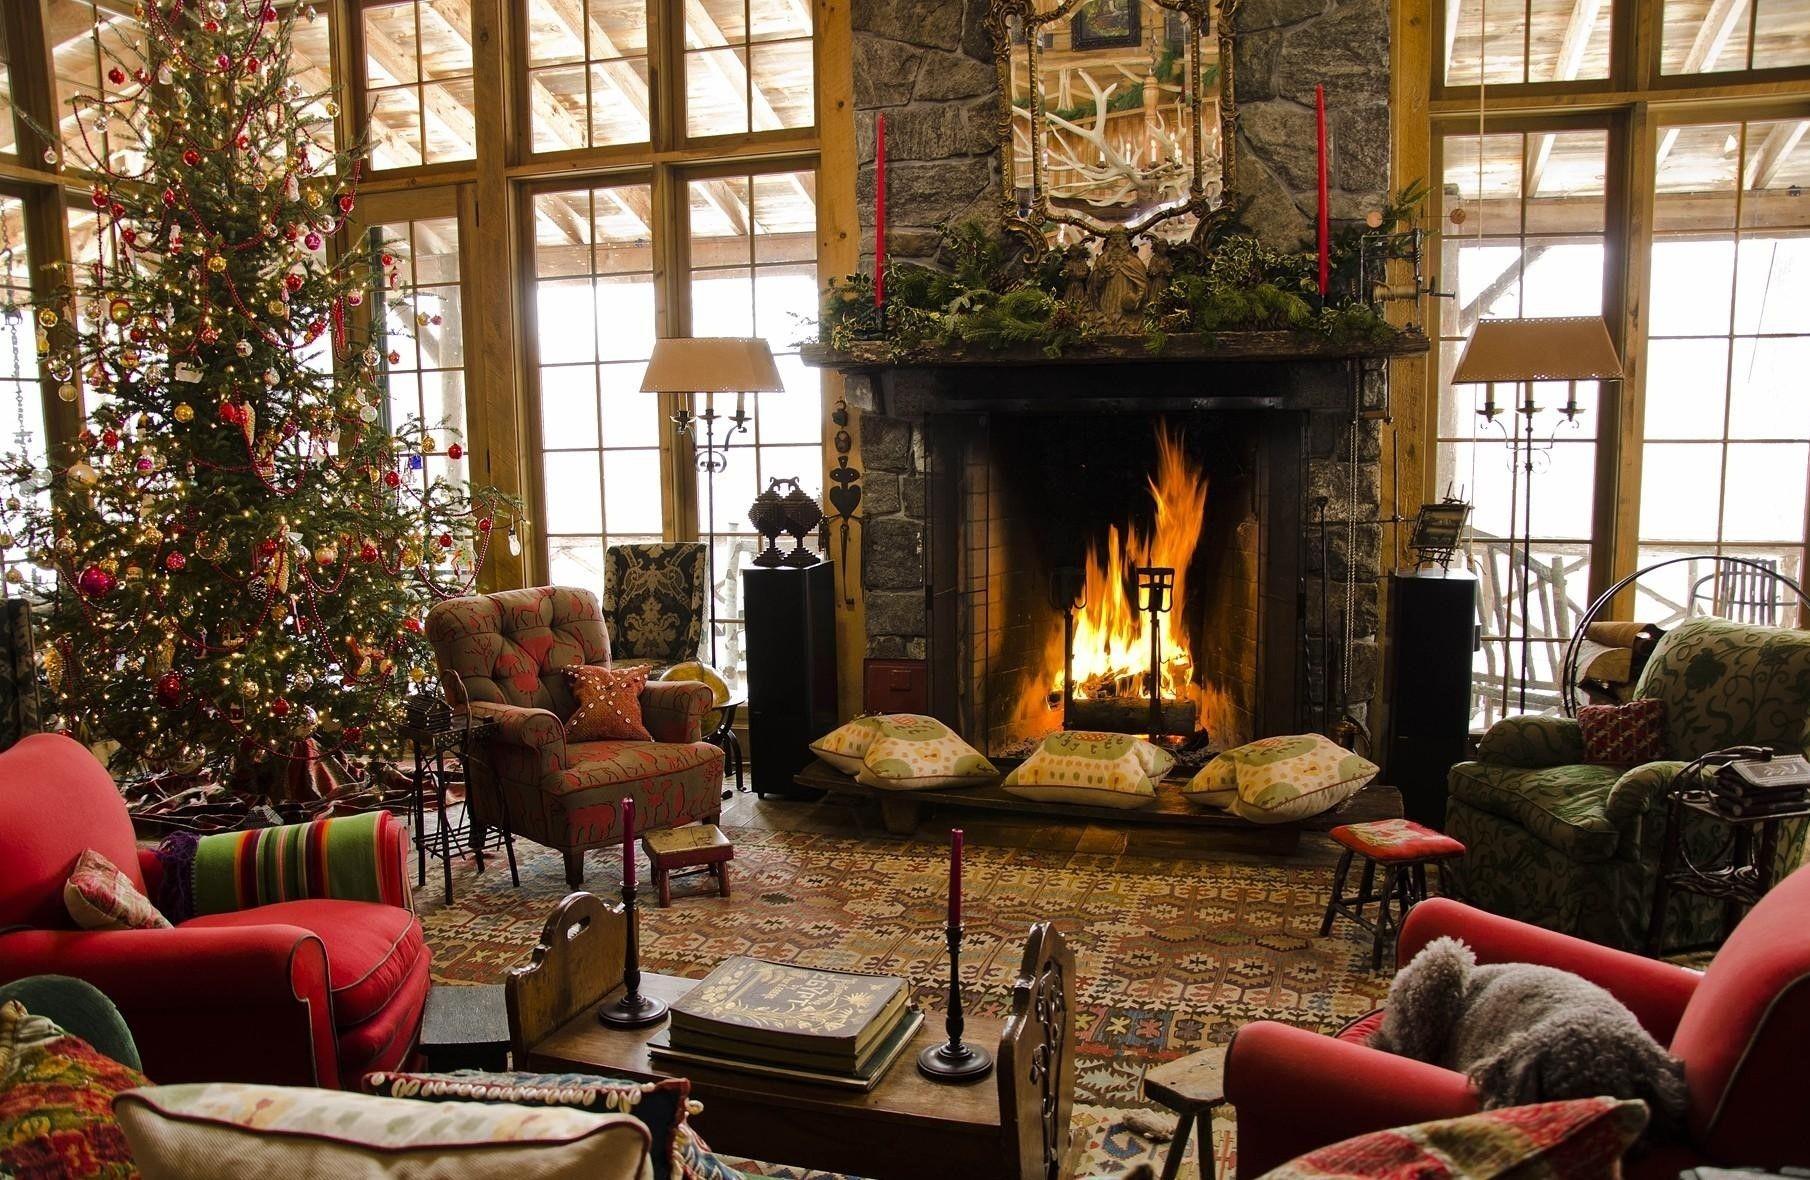 Fir, Fireplace, Christmas, Home, Comfort, Armchairs wallpaper